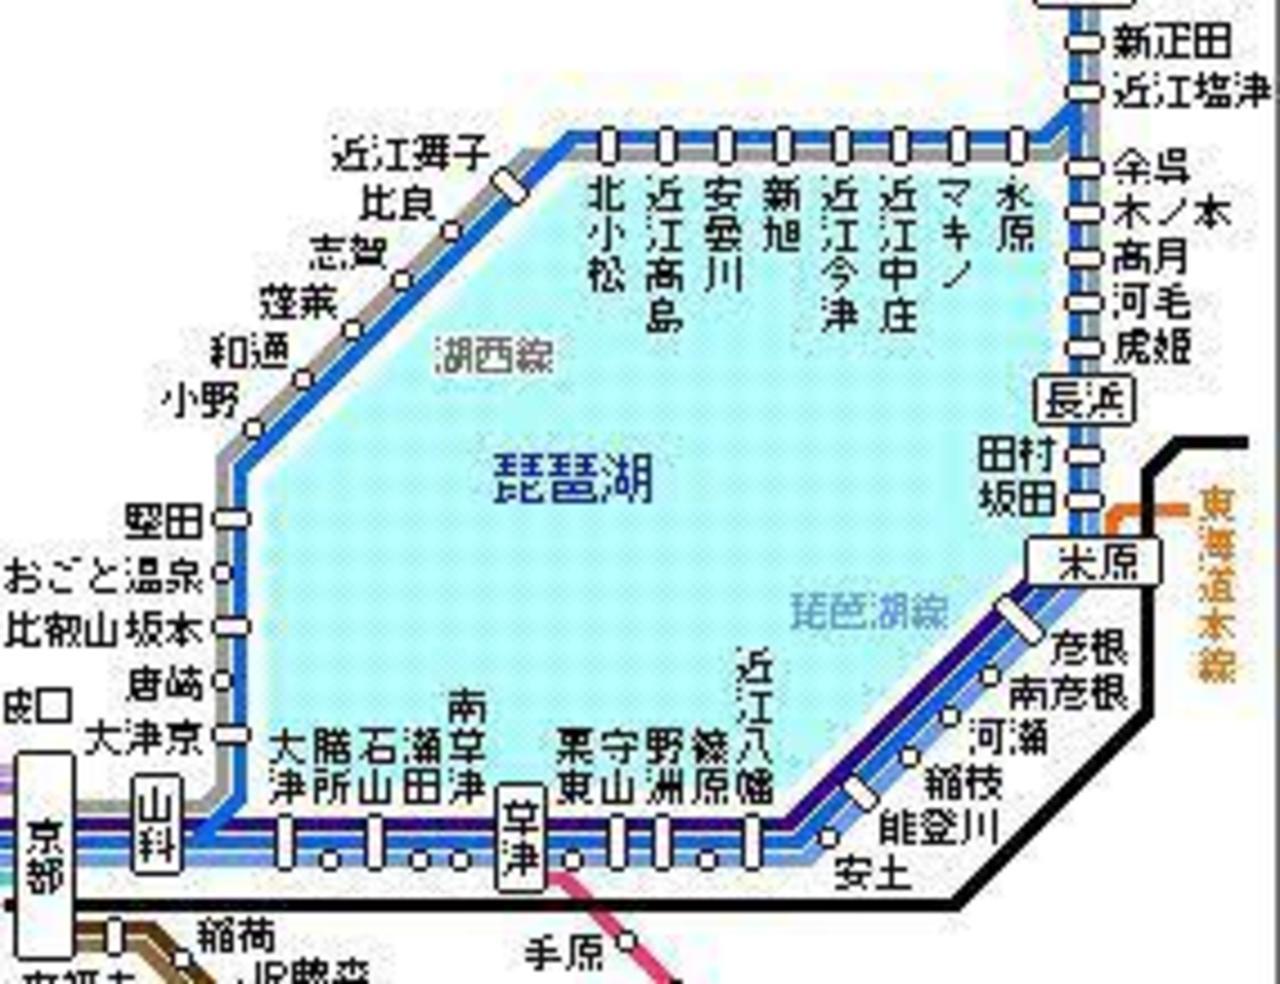 電車で琵琶湖1周 ただ乗っているだけ 京都駅で降りてラーメンを食す 滋賀県の旅行記 ブログ By Hirohiraさん フォートラベル